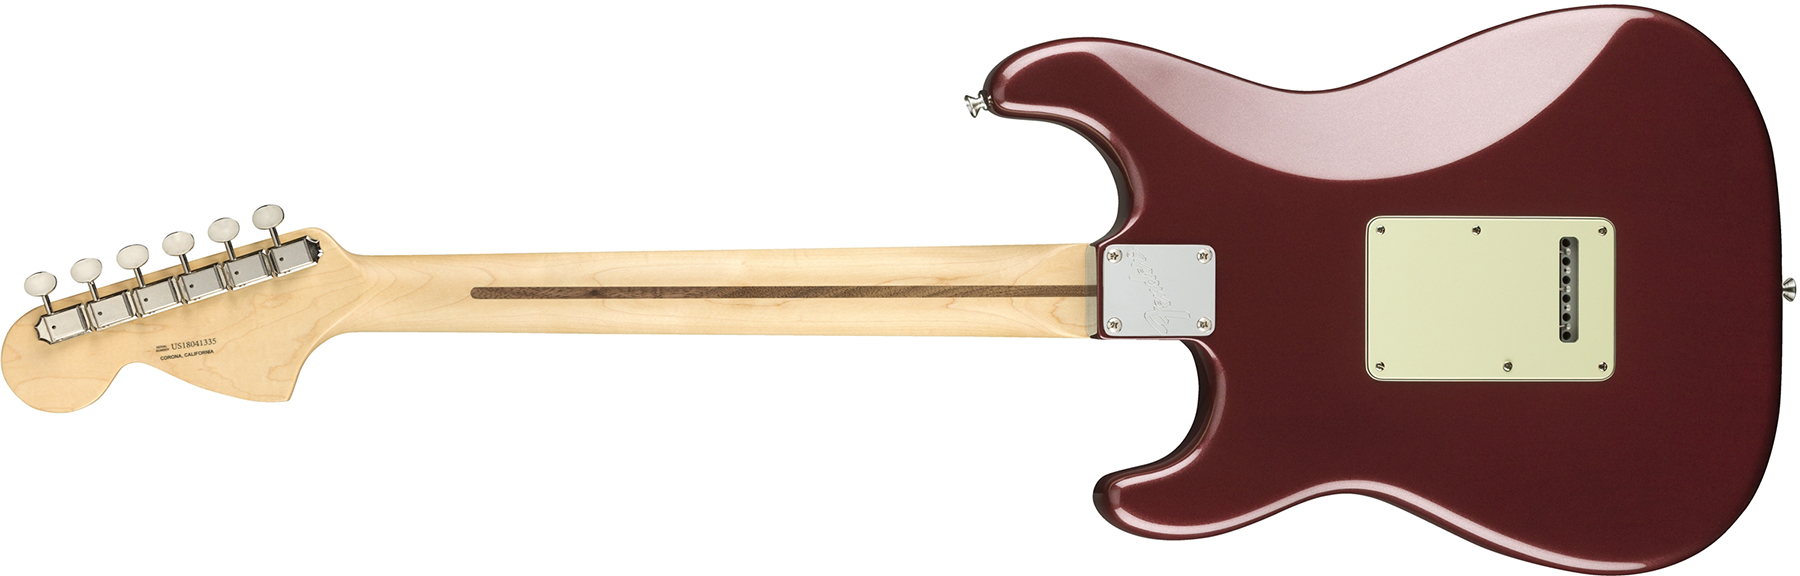 Fender Strat American Performer Usa Hss Rw - Aubergine - Elektrische gitaar in Str-vorm - Variation 1